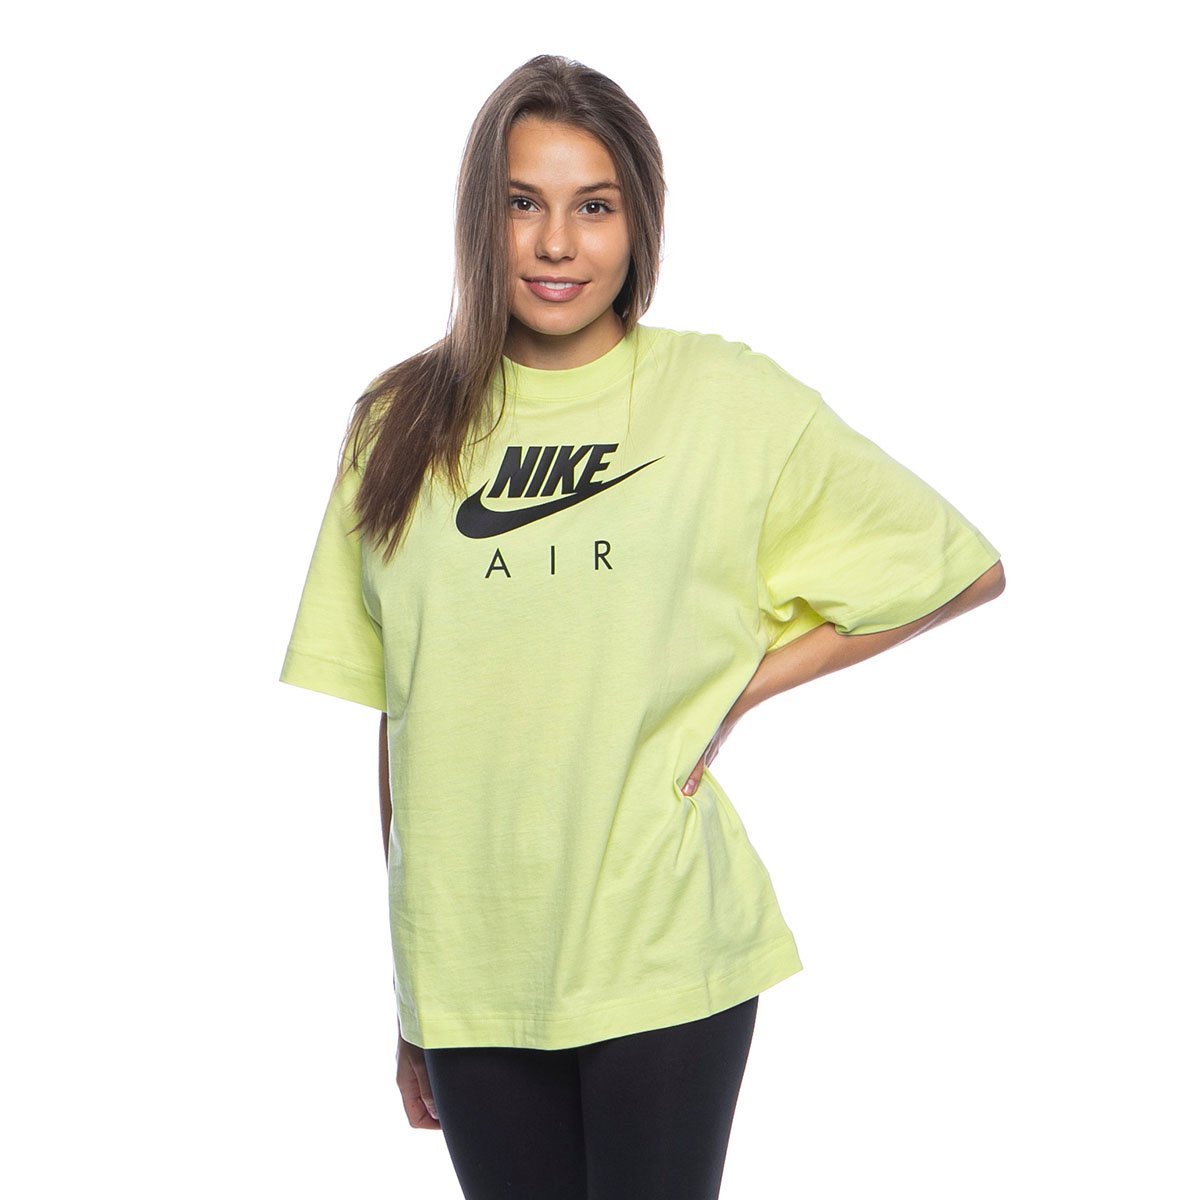 lime green nike shirt women's